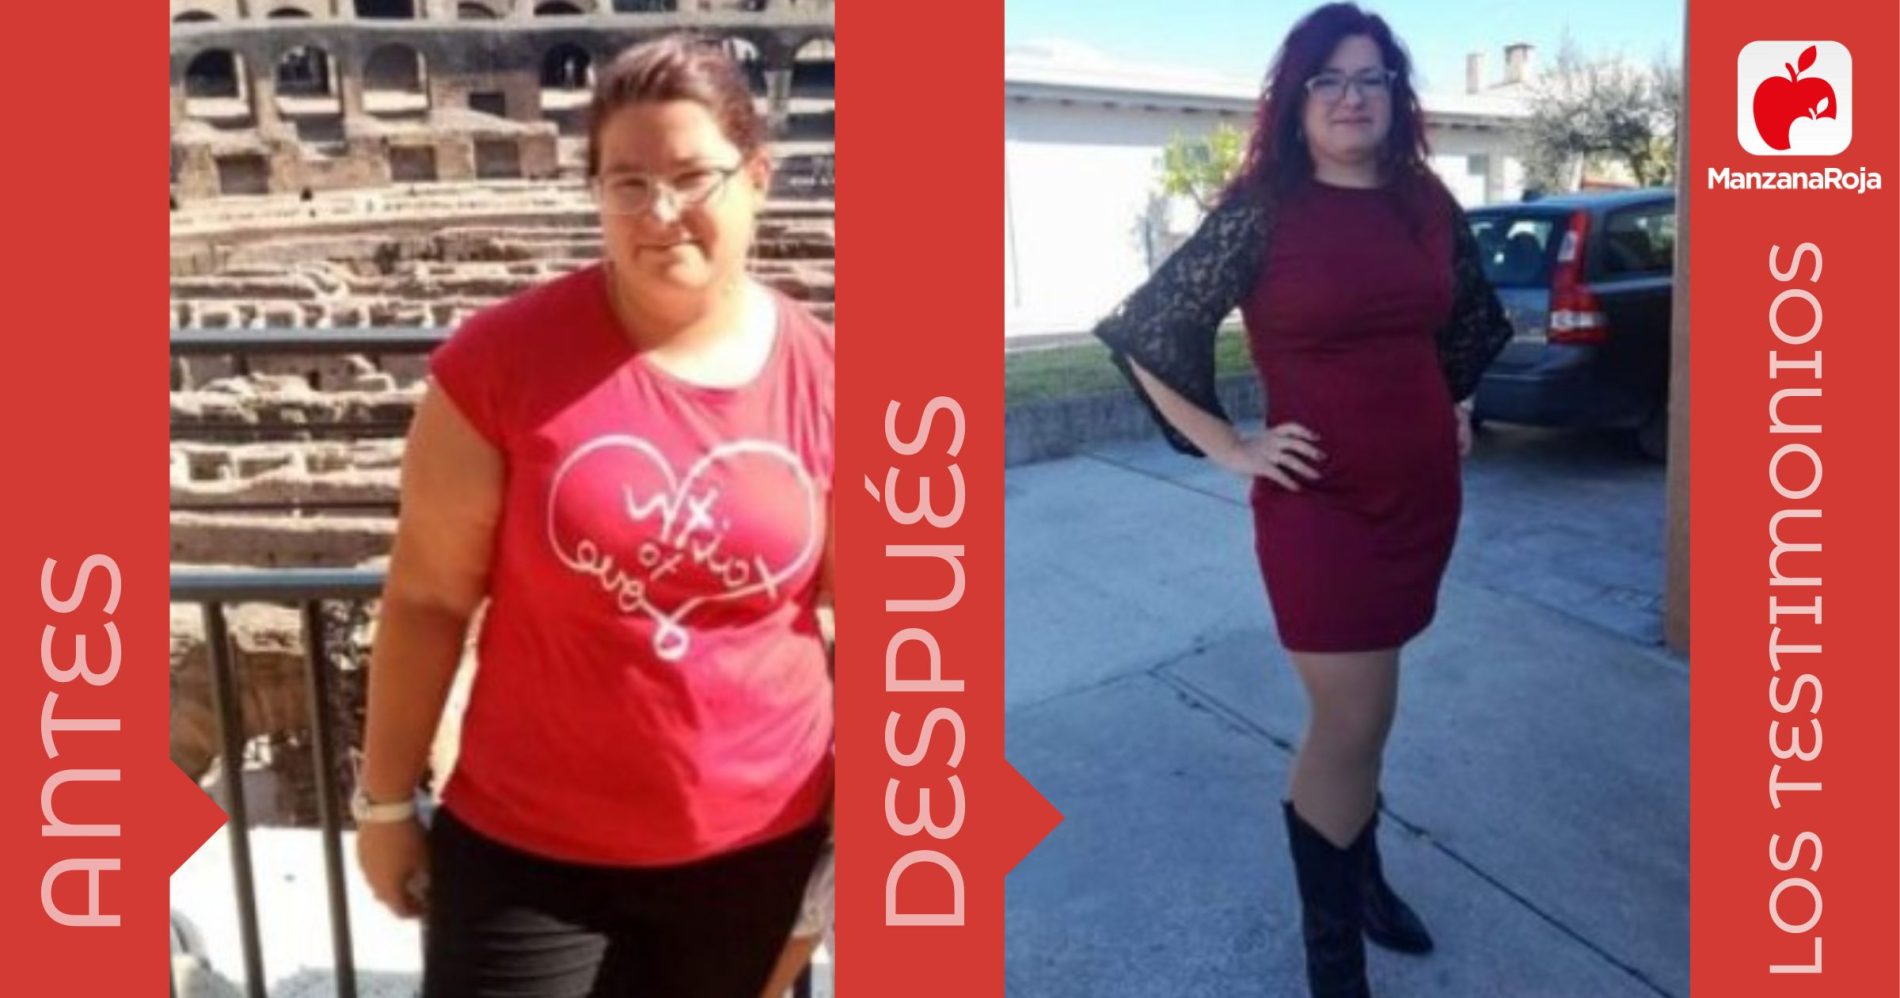 Martina antes y después de usar la app ManzanaRoja para perder peso